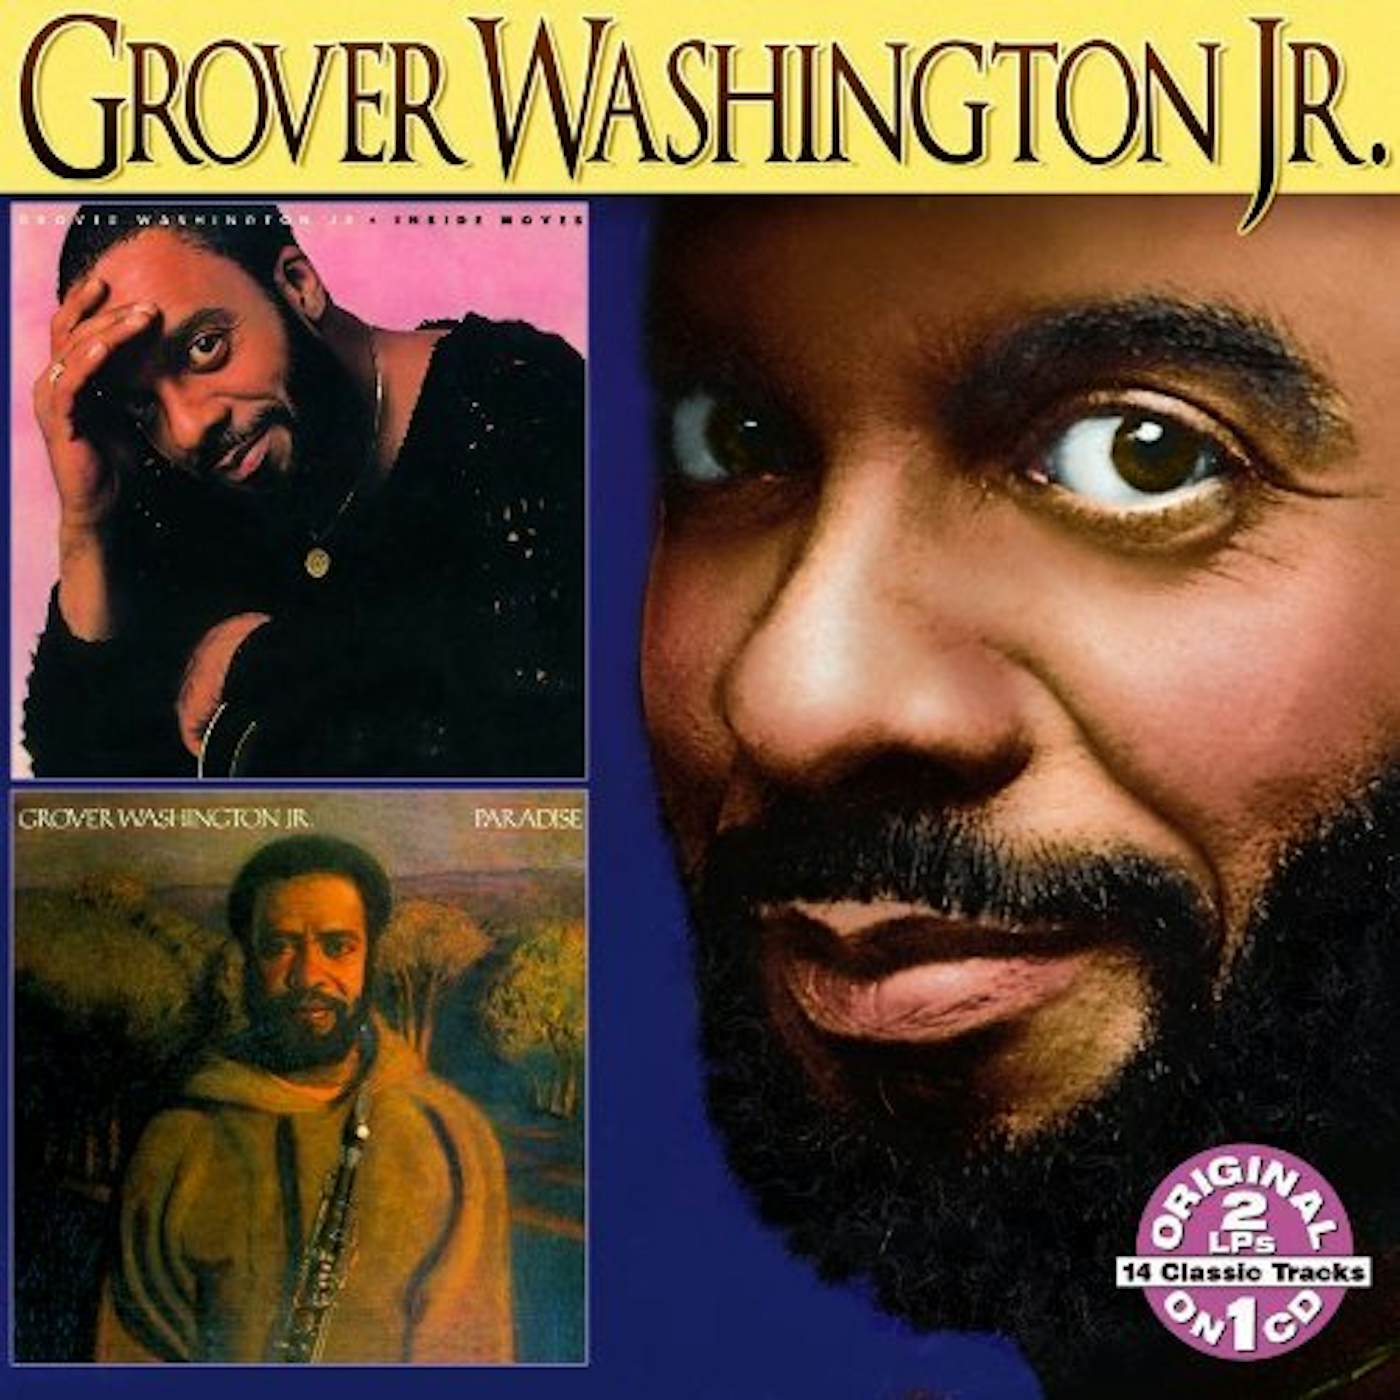 Grover Washington, Jr. INSIDE MOVES CD